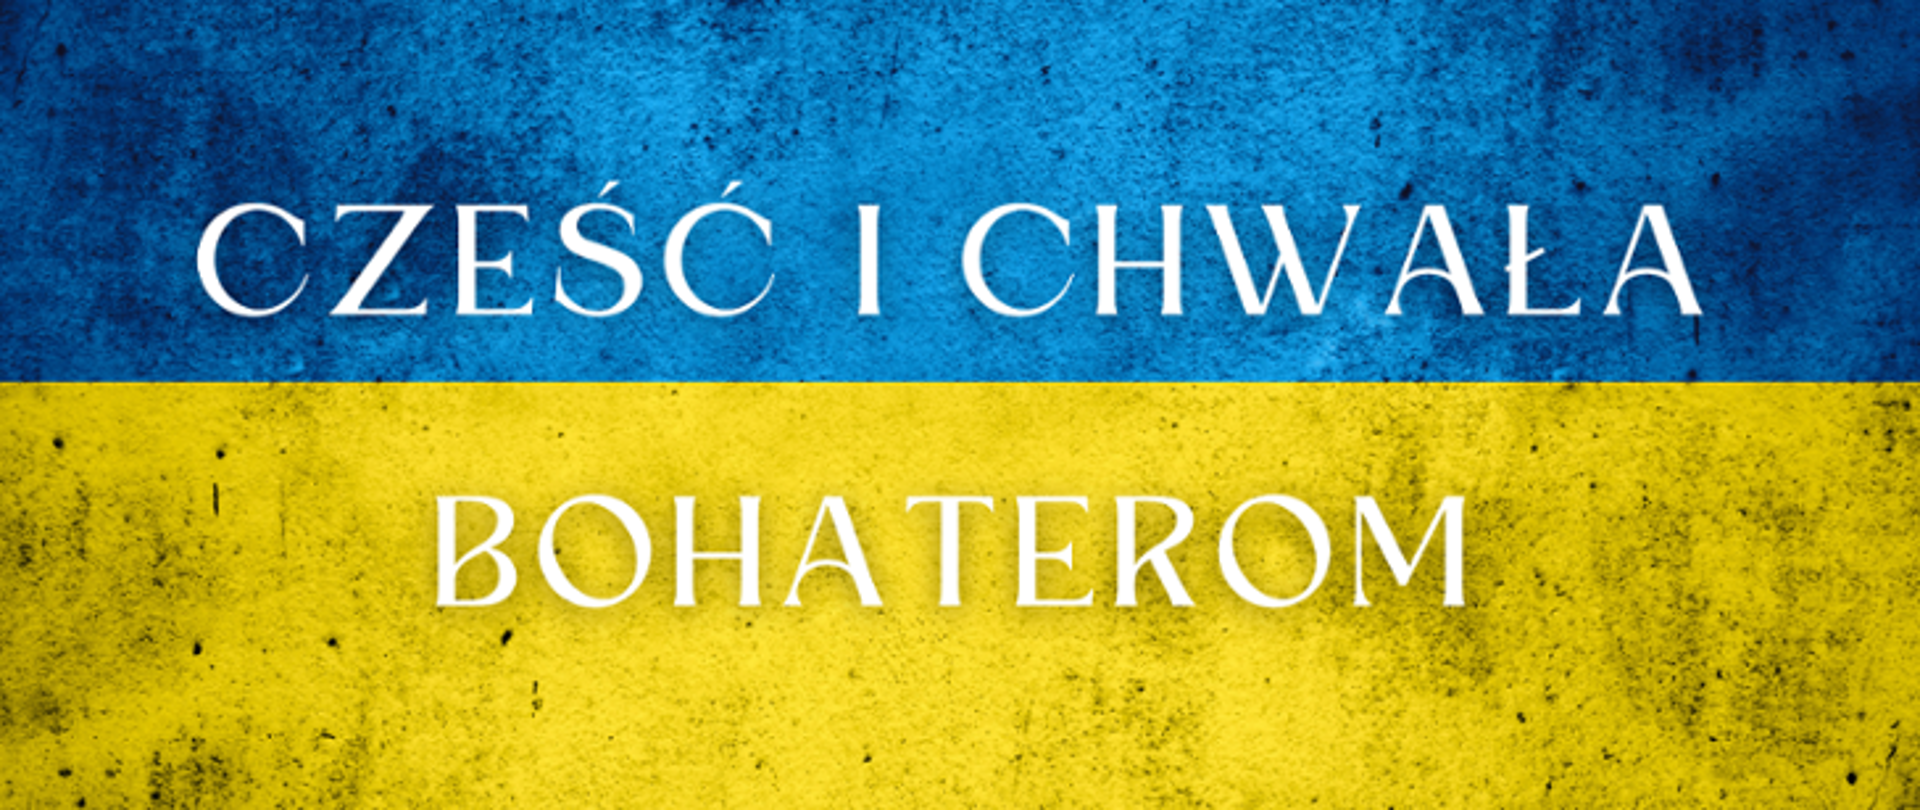 flaga Ukrainy z napisem cześć i chwała bohaterom